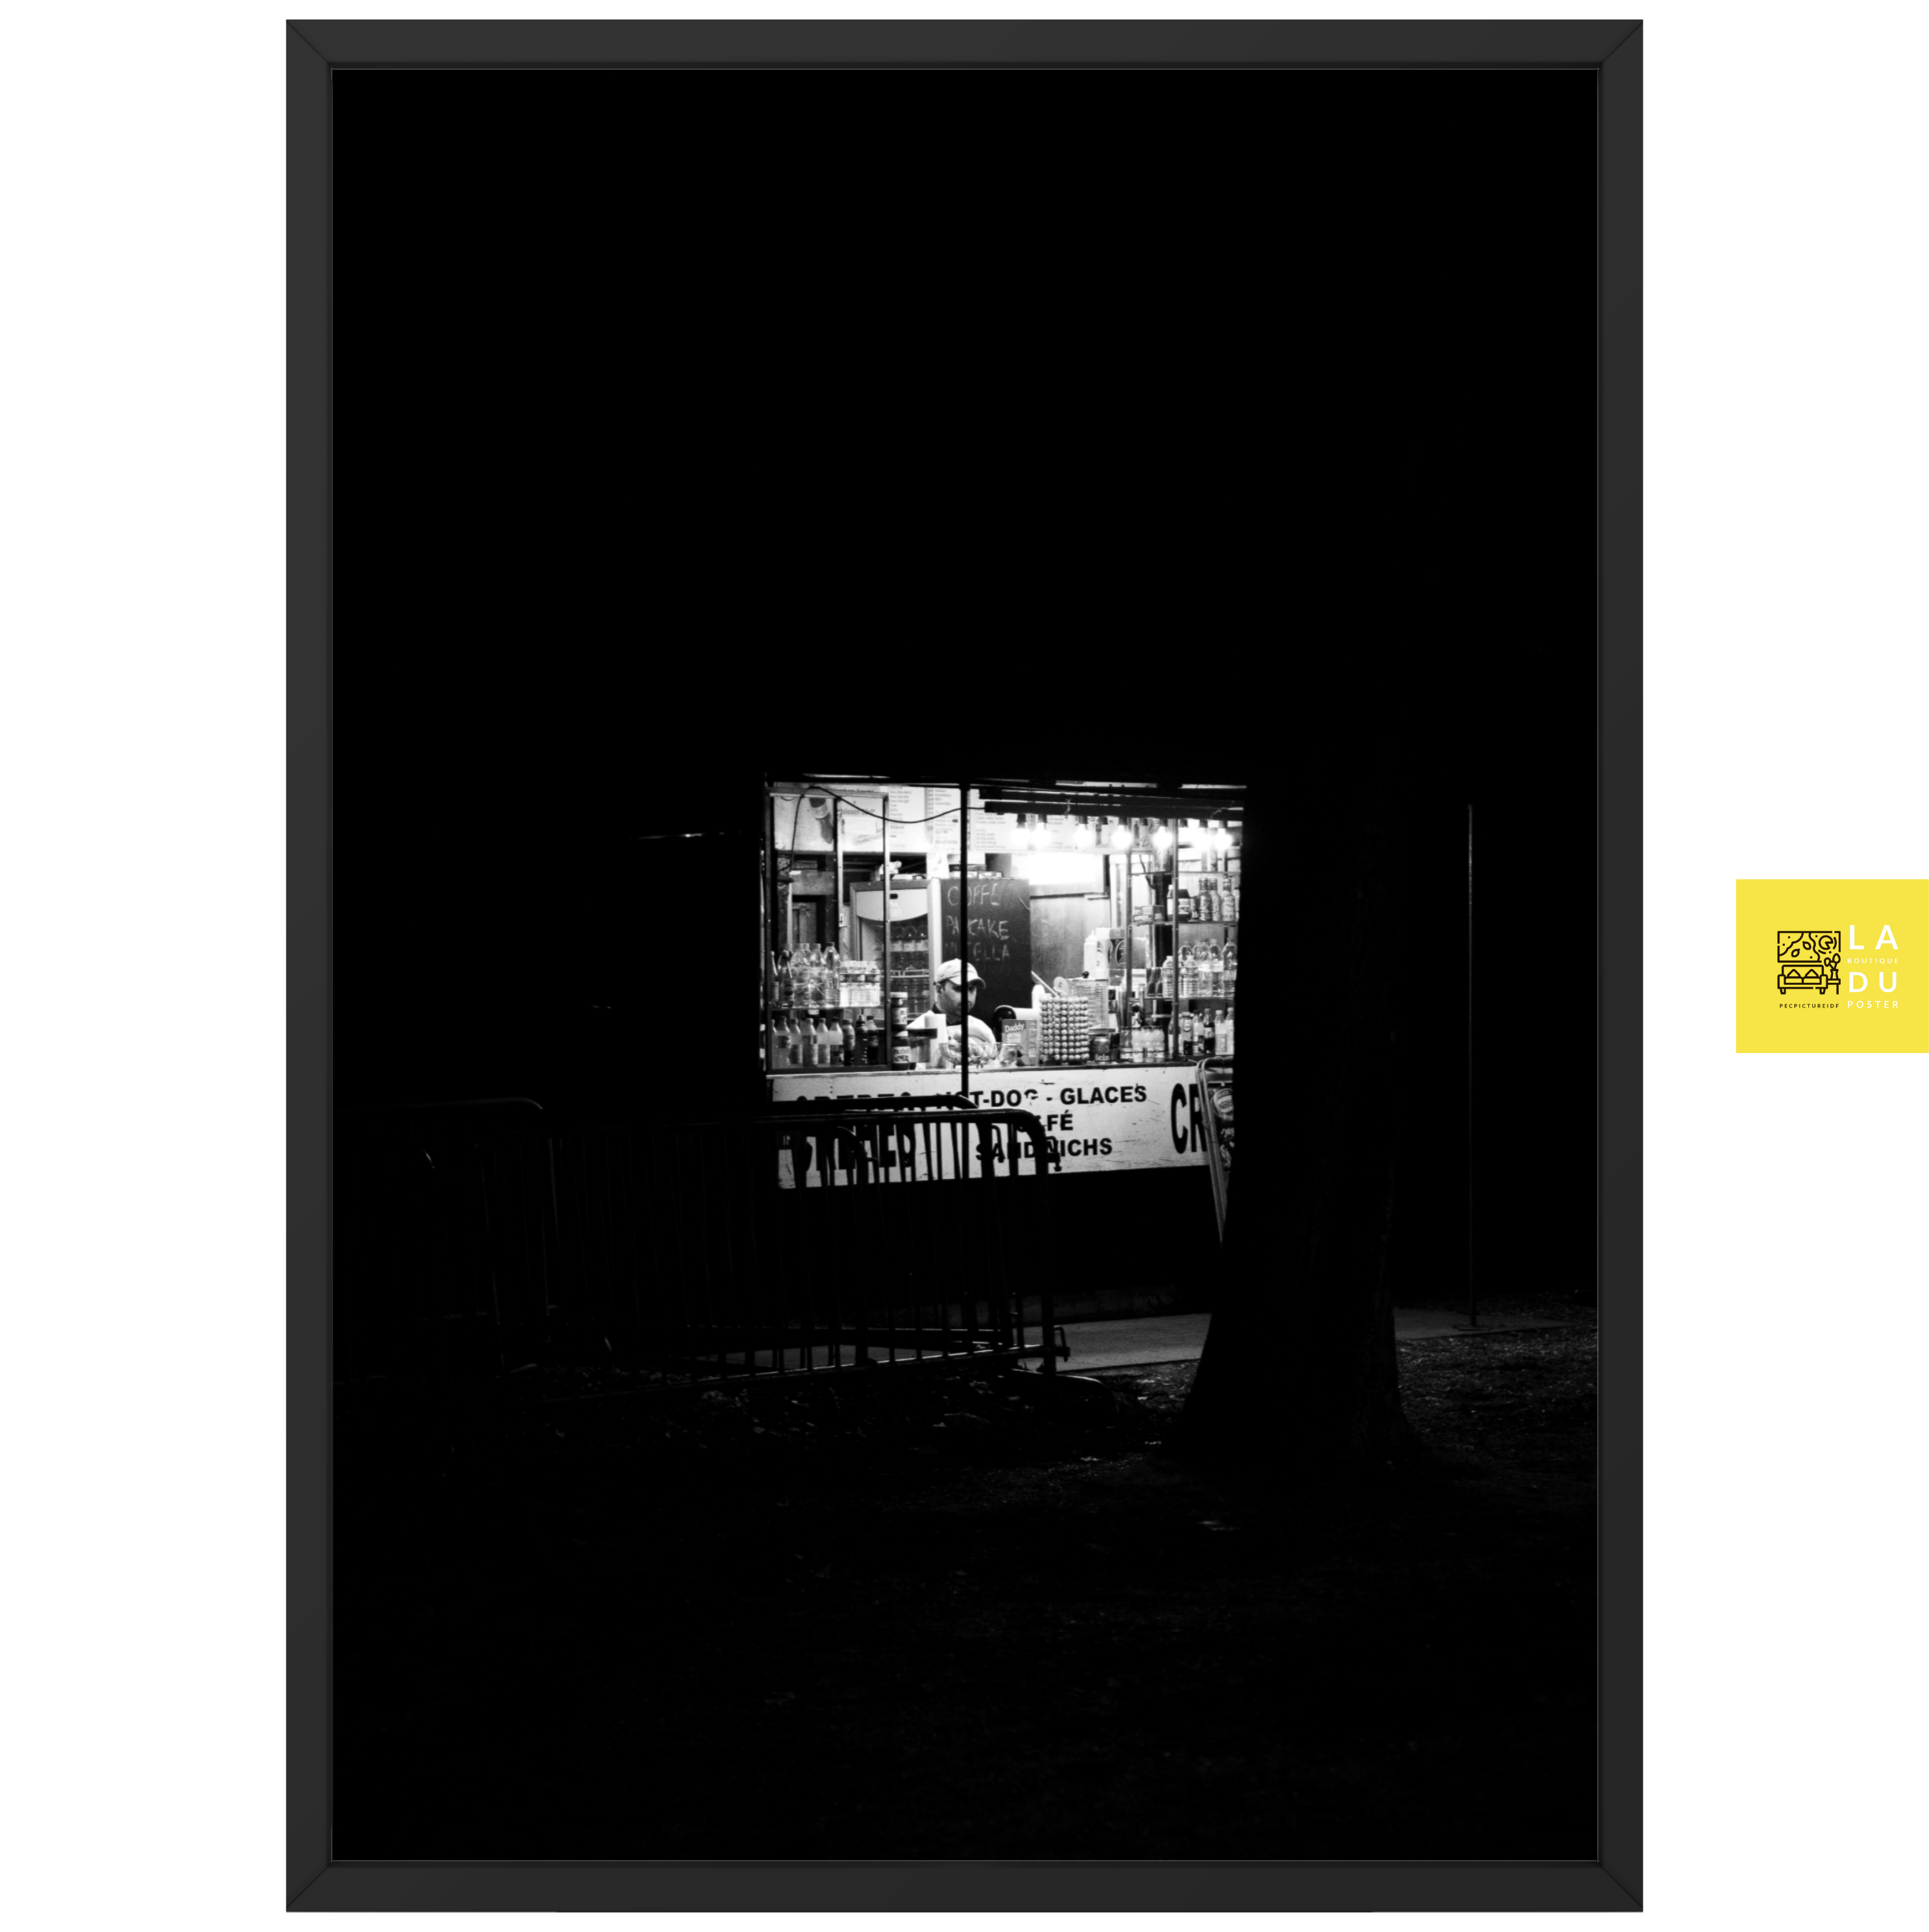 L'épicerie de nuit - Poster encadré - La boutique du poster Français